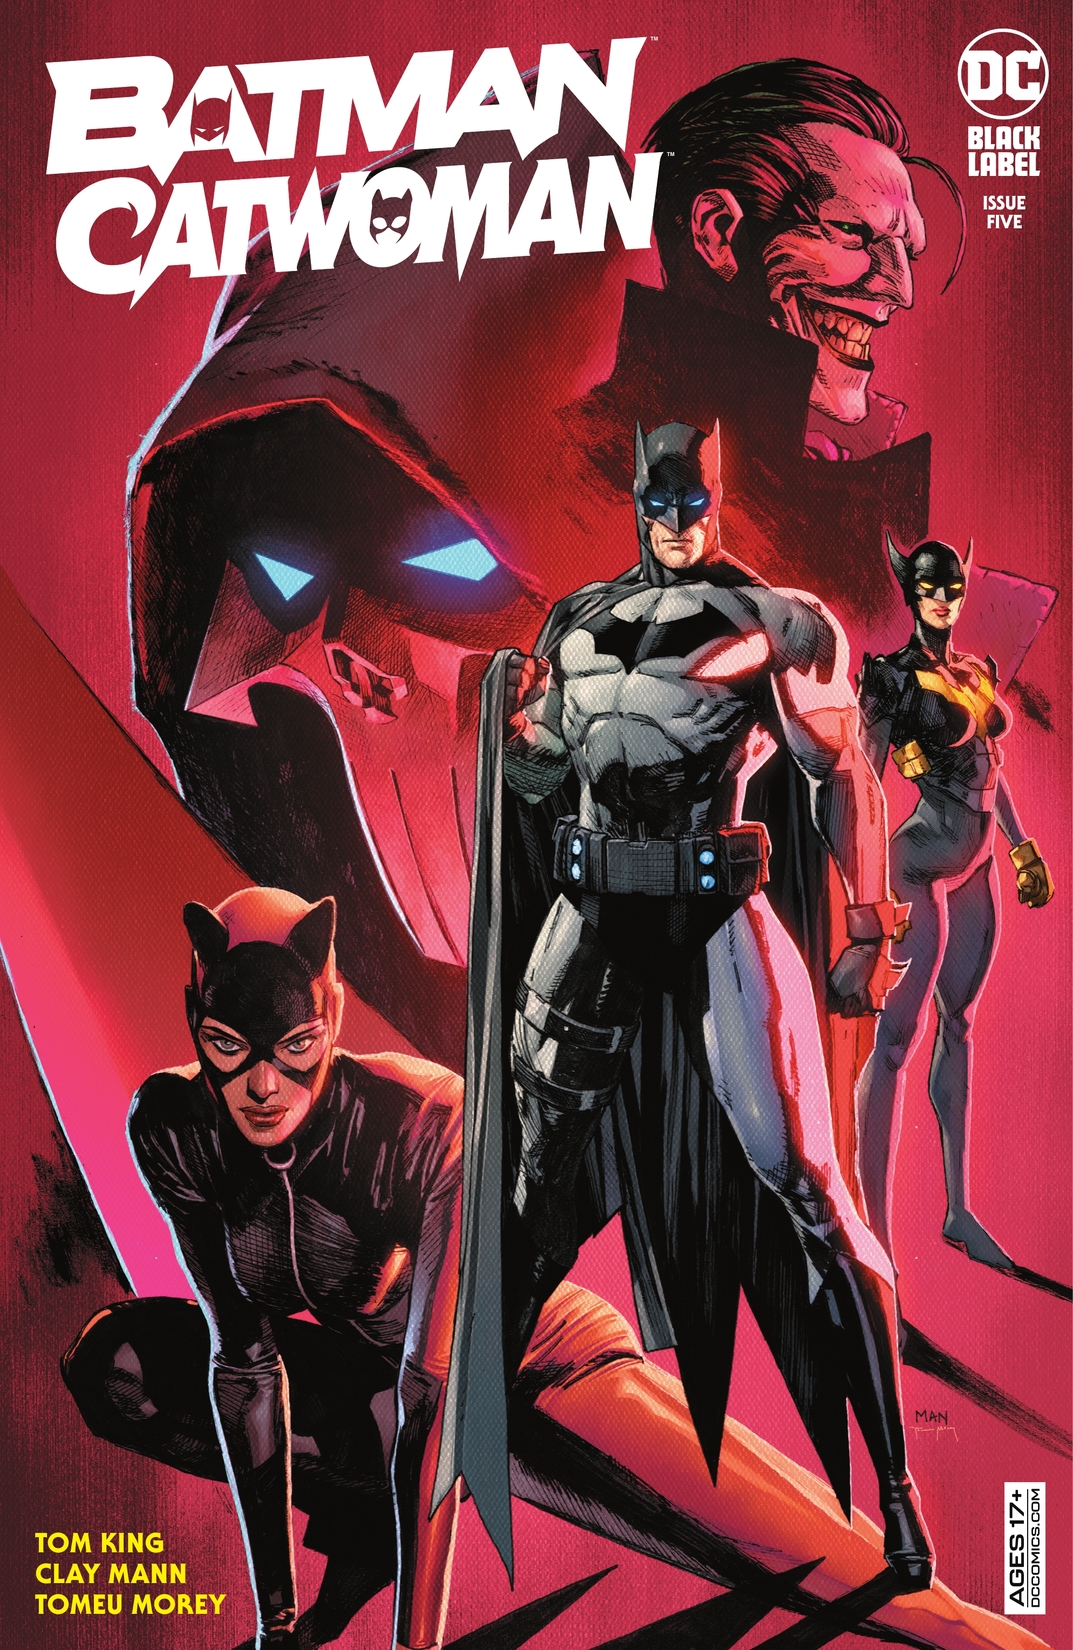 Batman/Catwoman #5 preview images